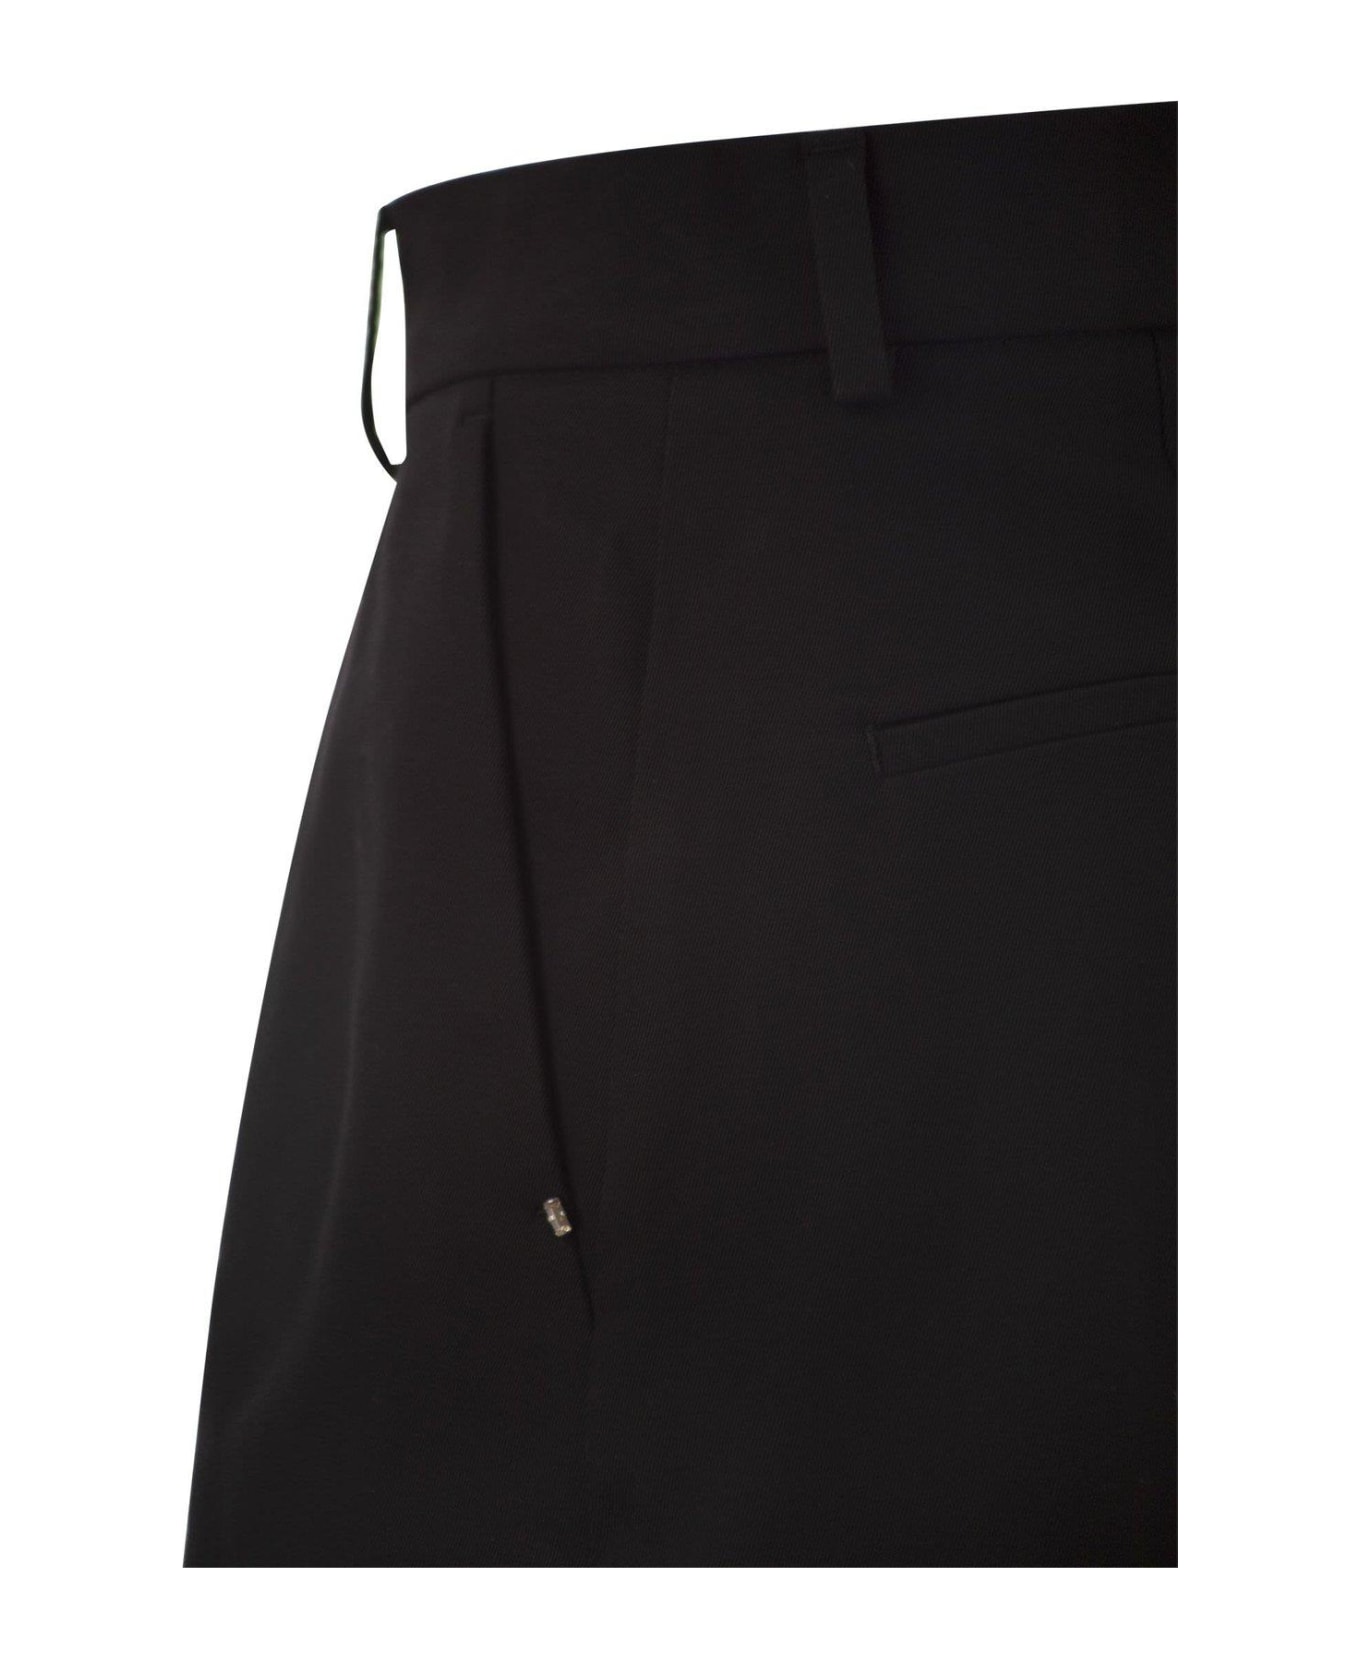 SportMax Unico Washed Shorts - BLACK